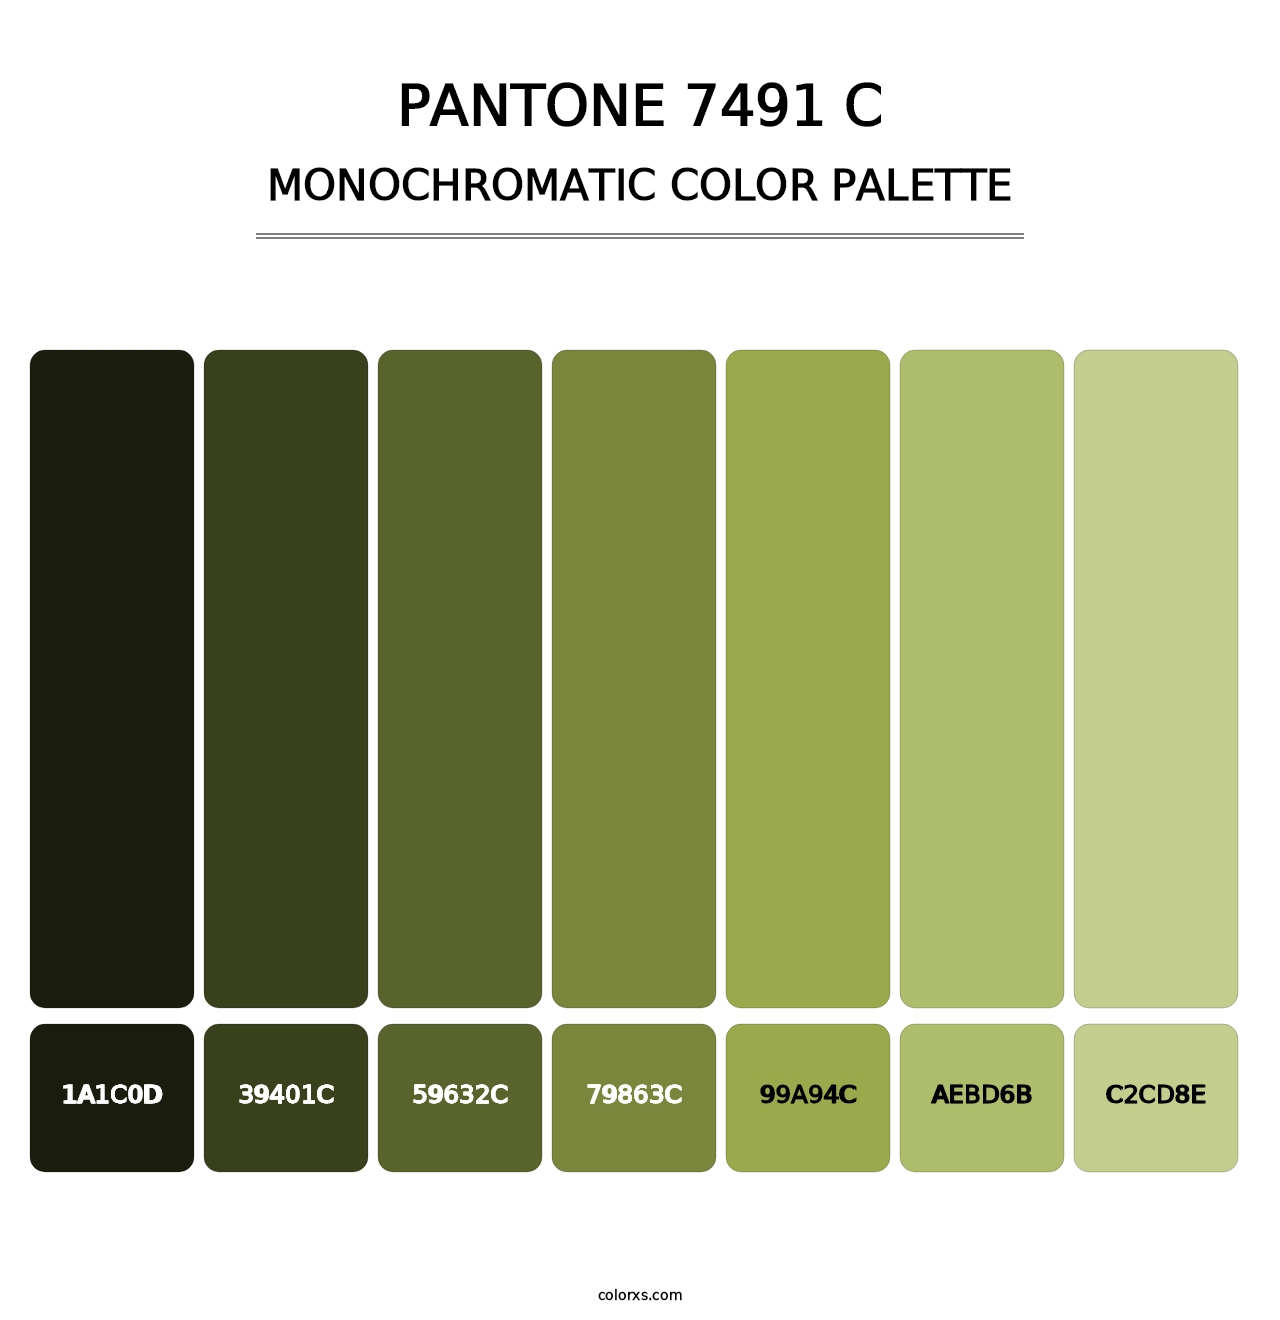 PANTONE 7491 C - Monochromatic Color Palette